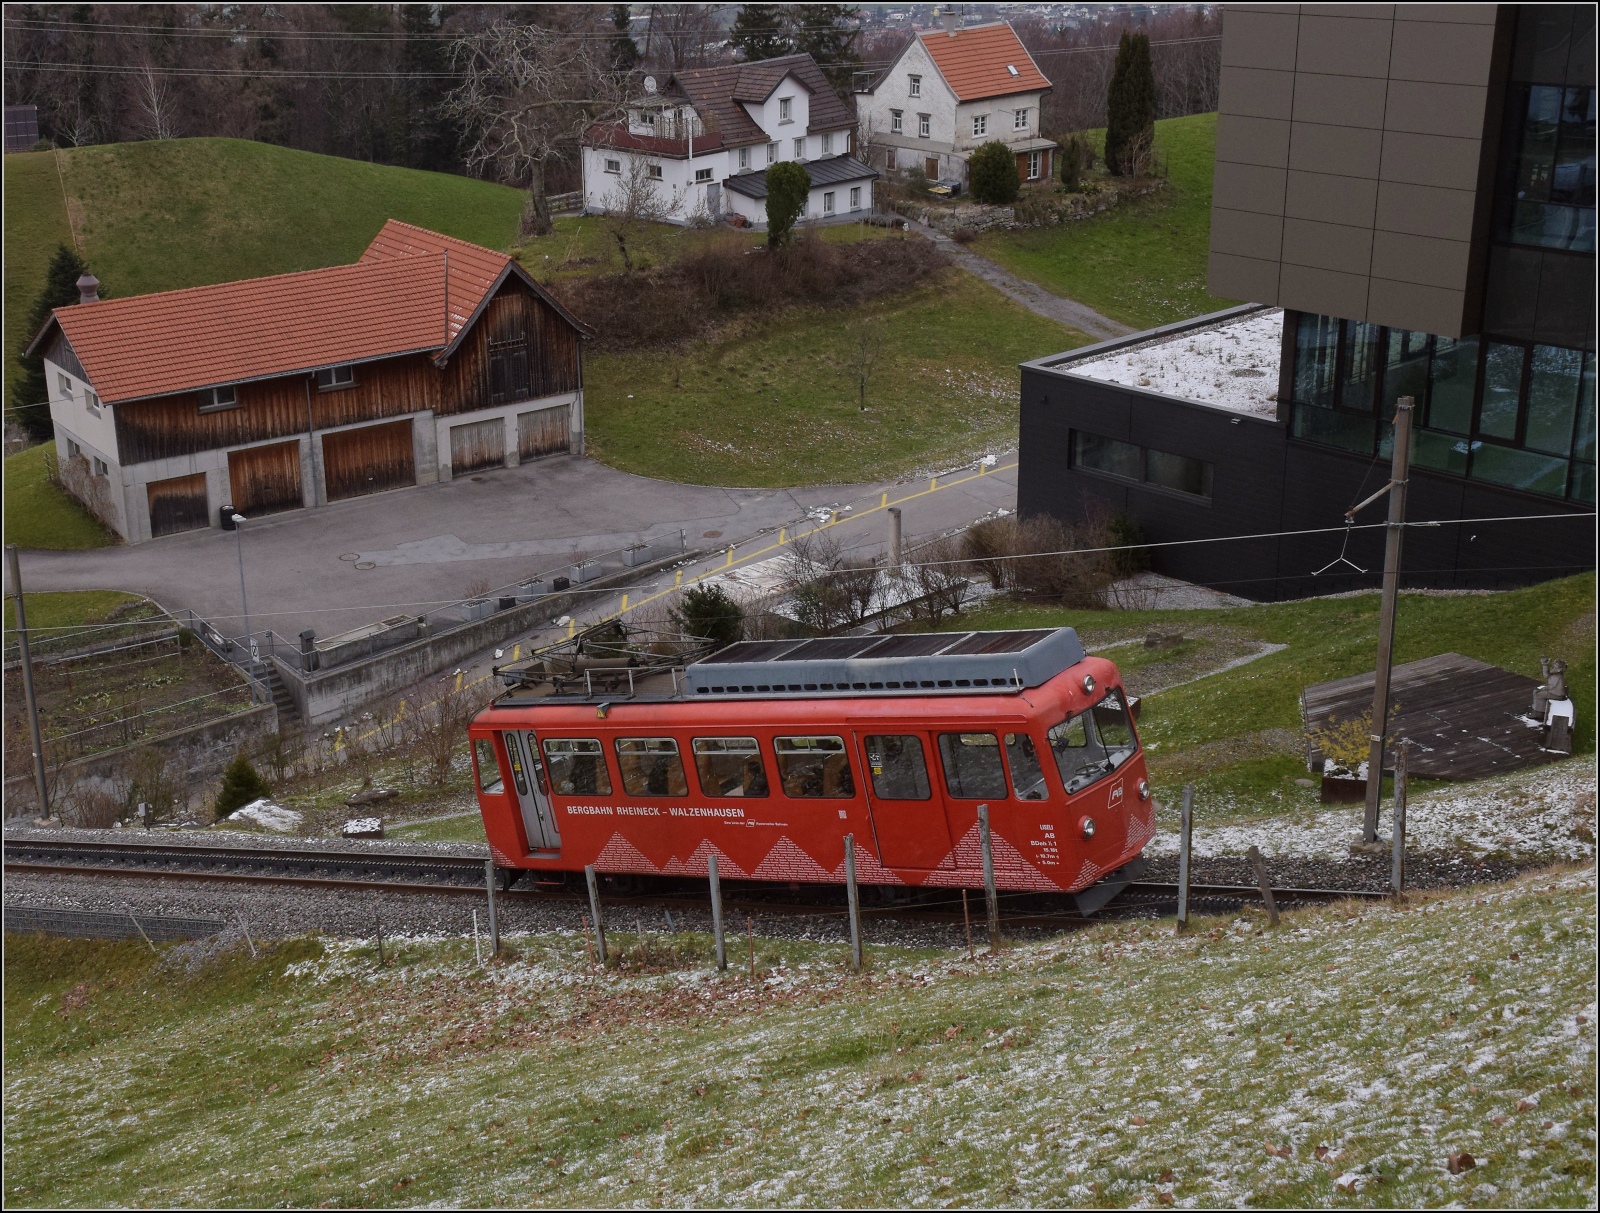 S26-BB-und-IGS-Minitreffen.

Die Strecke der Bergbahn Rheineck-Walzenhausen mit BDeh 1/2 1 'Liseli' in Walzenhausen. Februar 2023.

Hier ist Bild ausrichten eine Qual, zur Vermeidung von verzerrten Häusern kann man den Sturz auch weitgehend übriglassen.